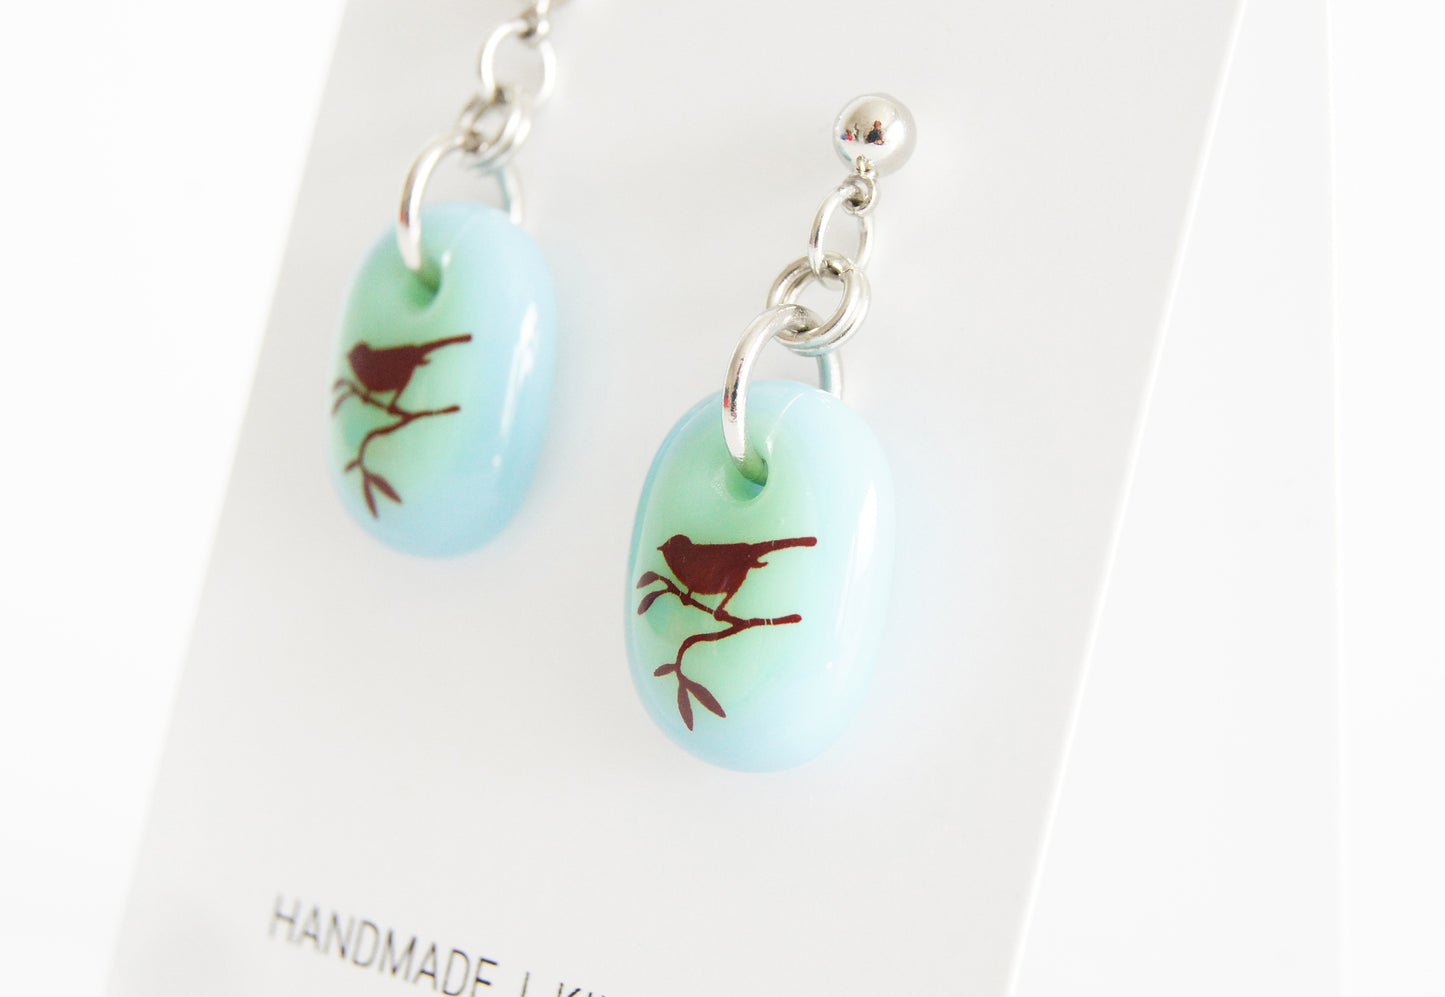 Handmade bird earrings on gift cards.